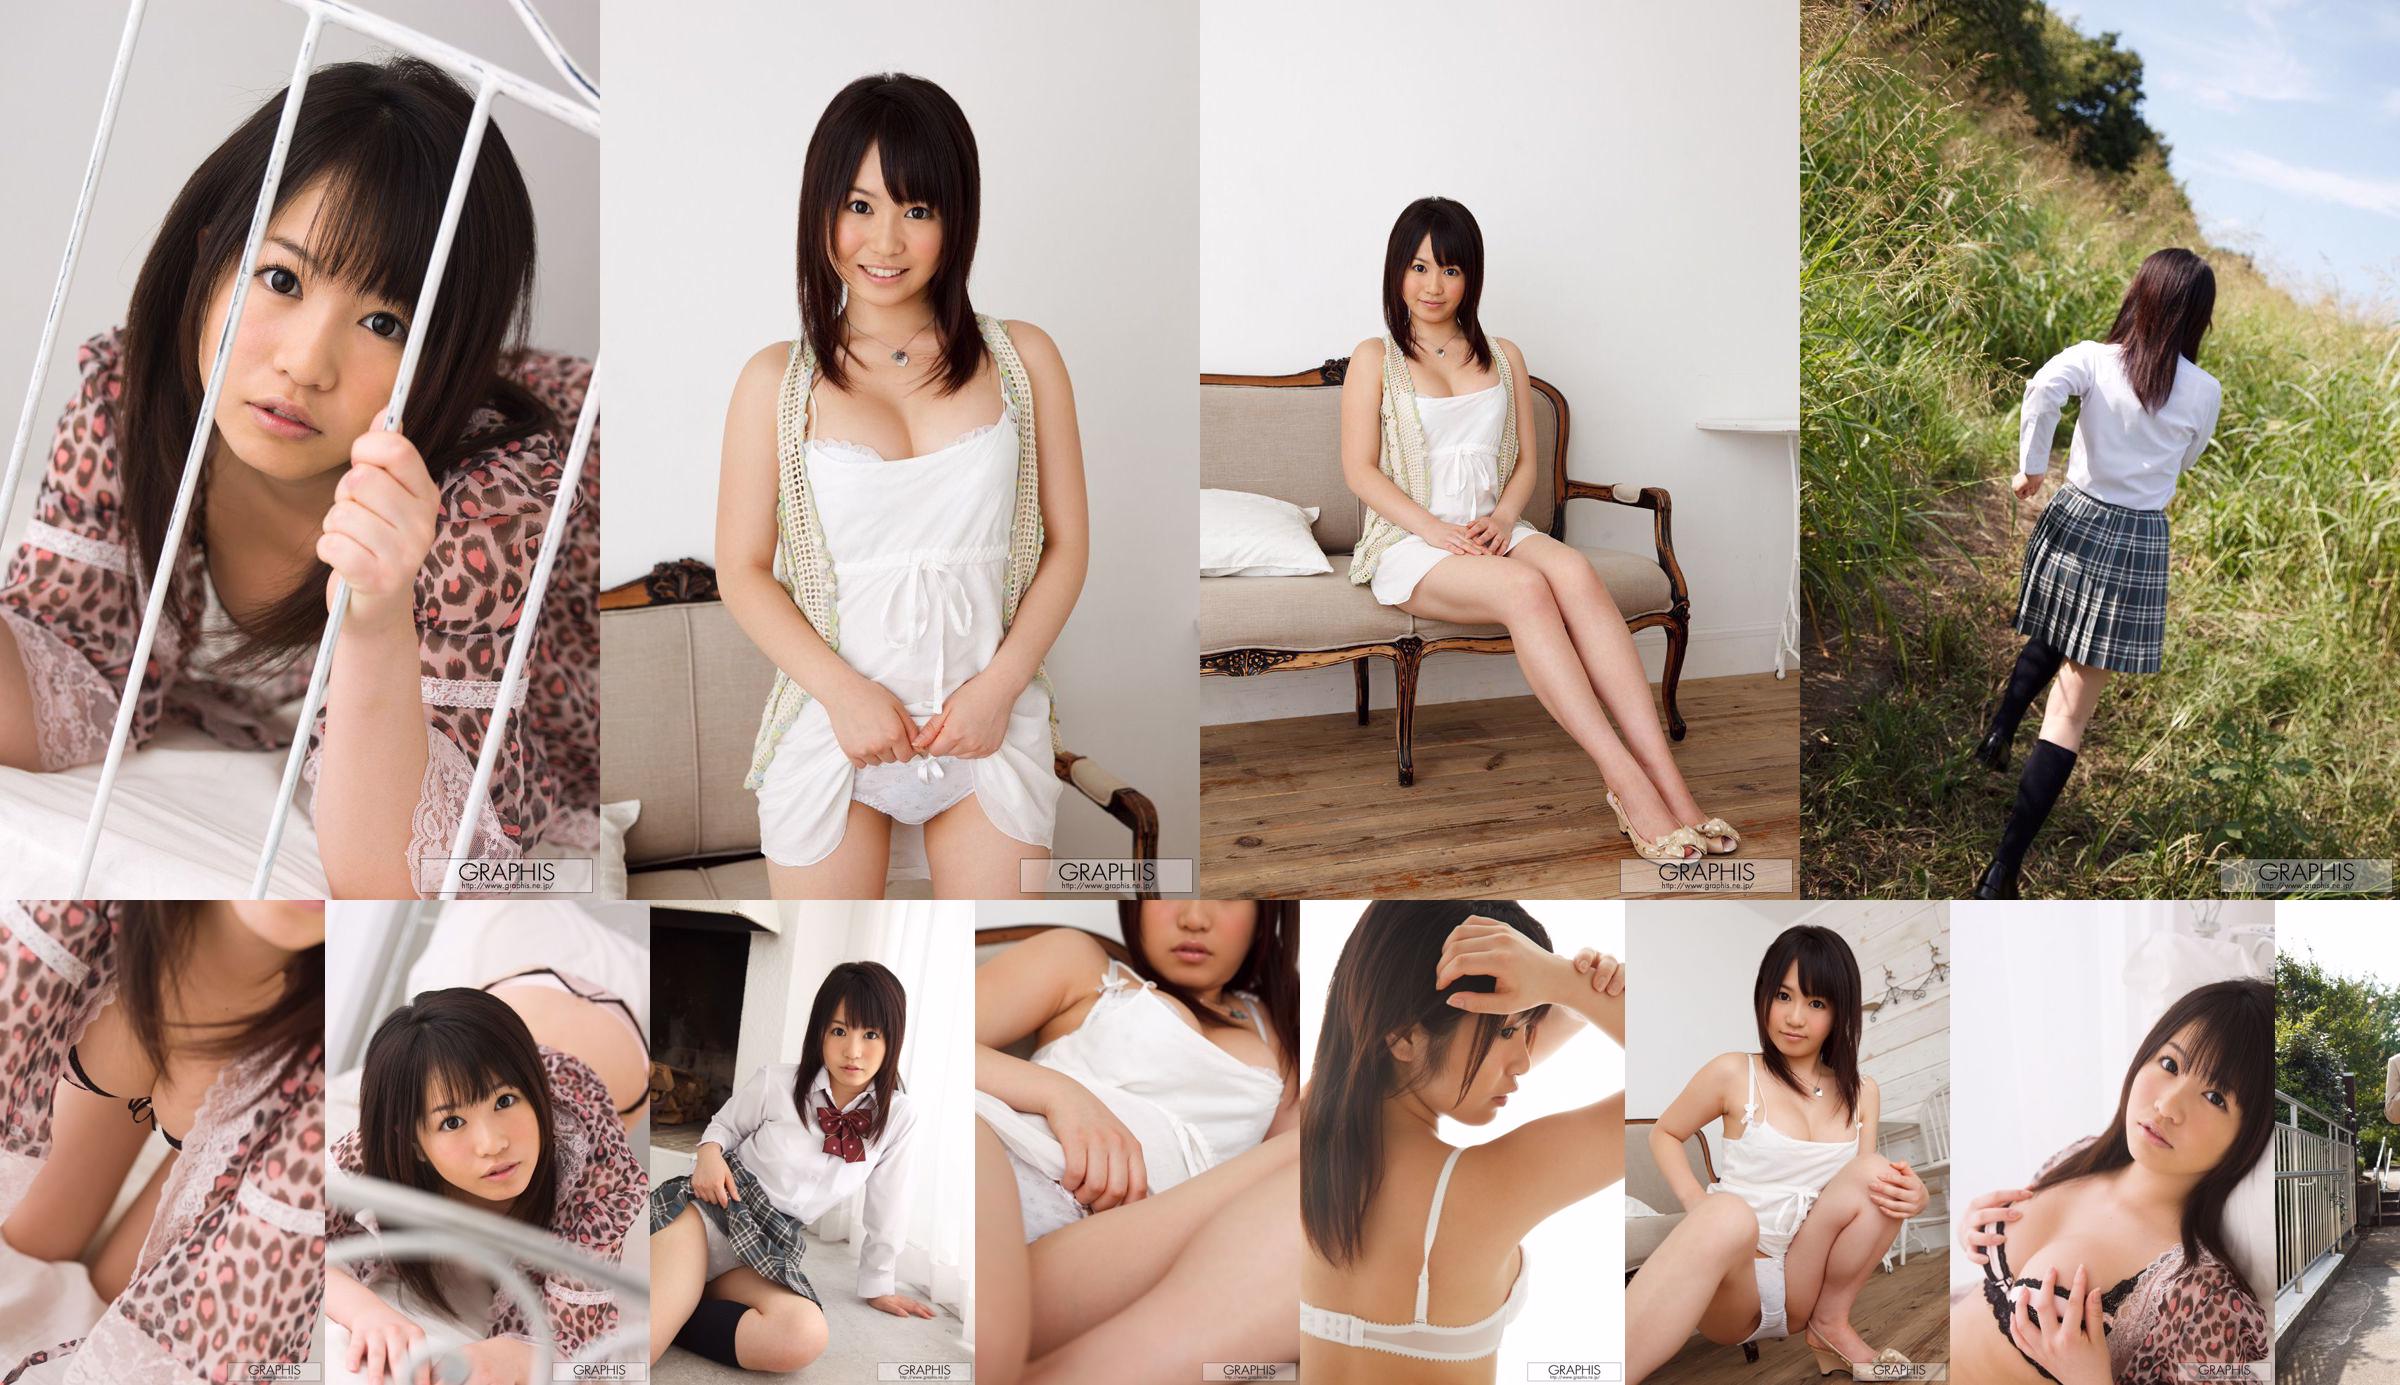 Nozomi Kashiwagi / Nozomi Kashiwagi "Artless Angel" [Graphis] Chicas No.8c138d Página 1